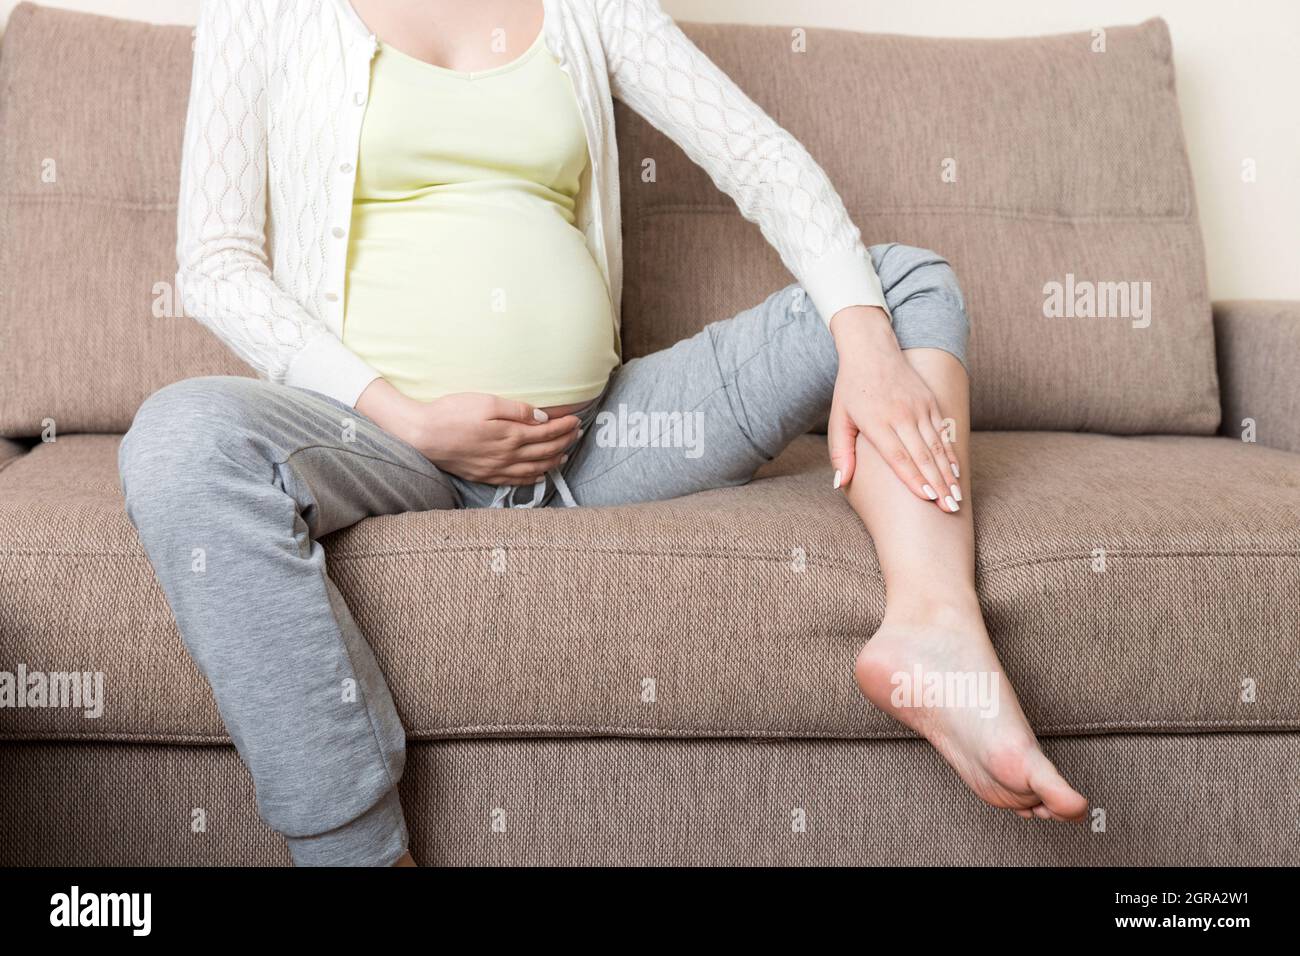 Ноют ноги при беременности. Ноги беременной женщины. Стопы беременных девушек. Ступни беременных девушек.